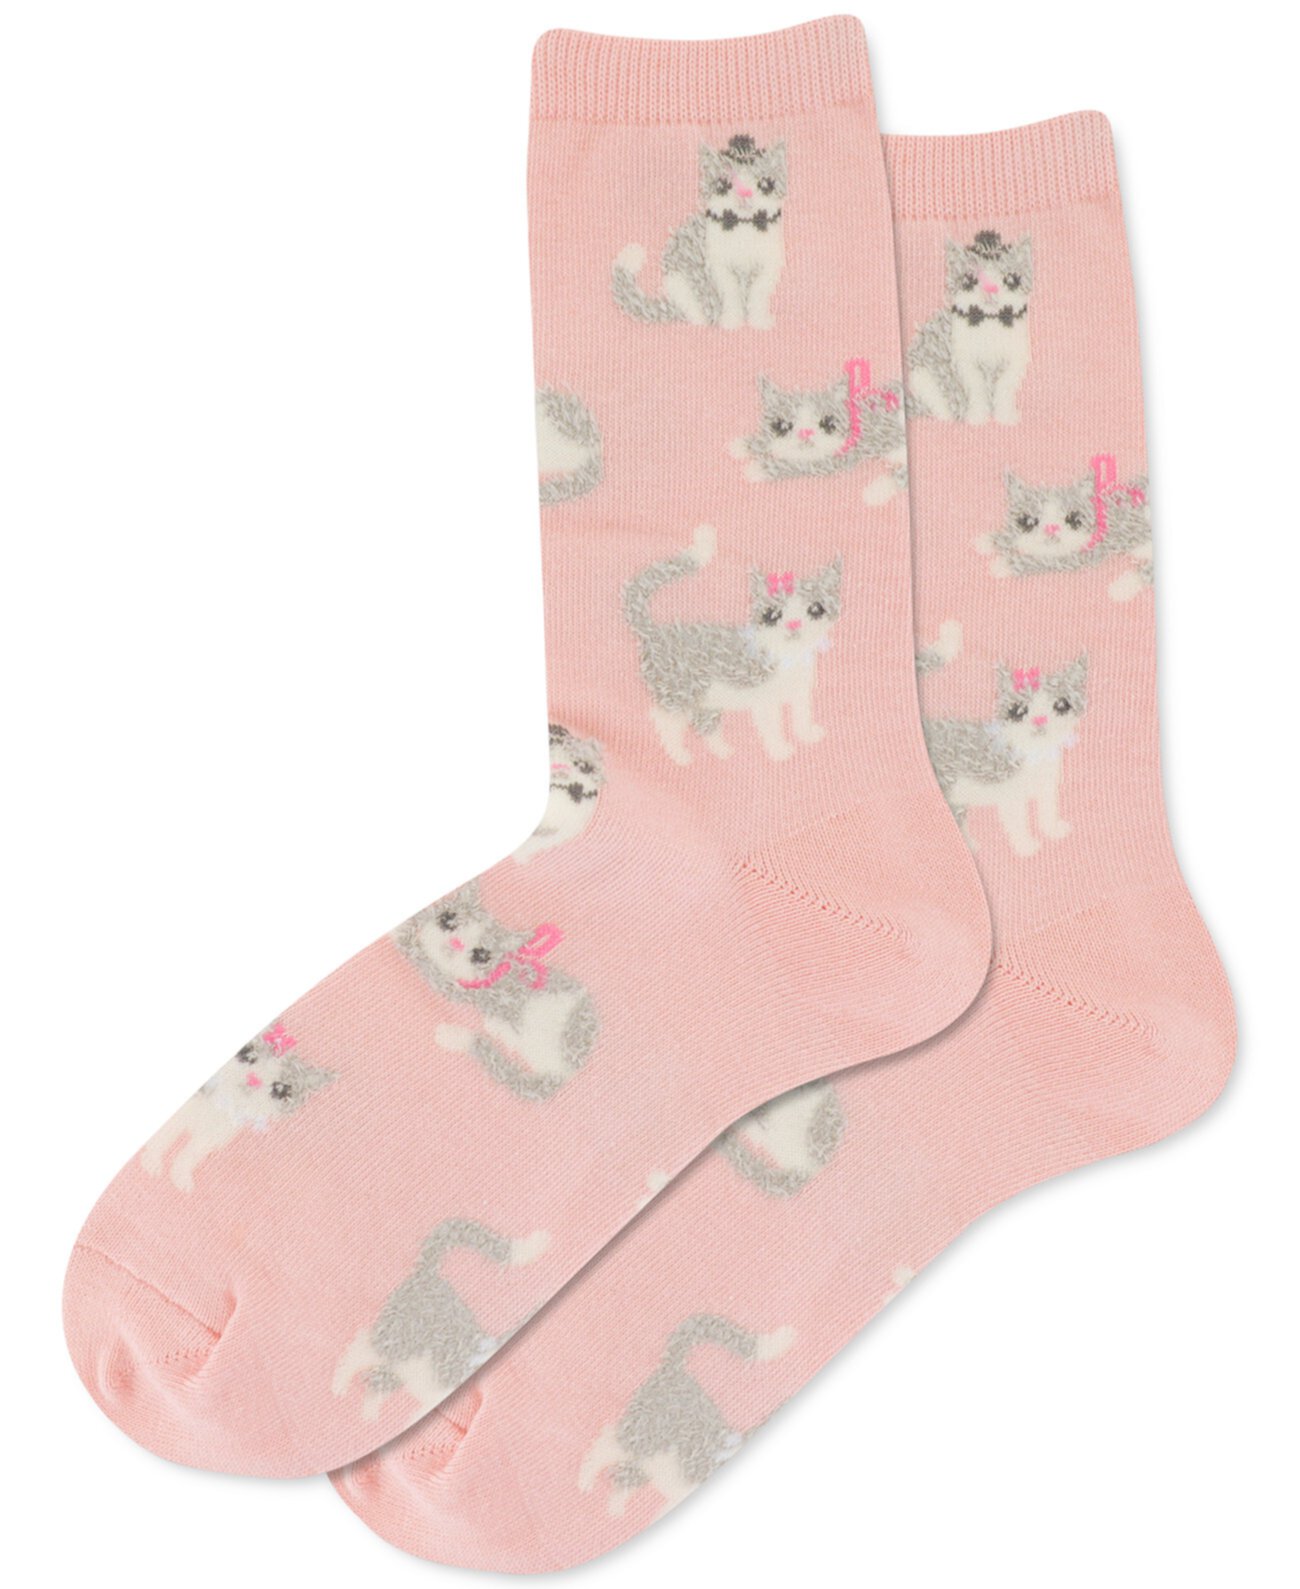 Женские носки с круглым вырезом Fuzzy Cat Hot Sox